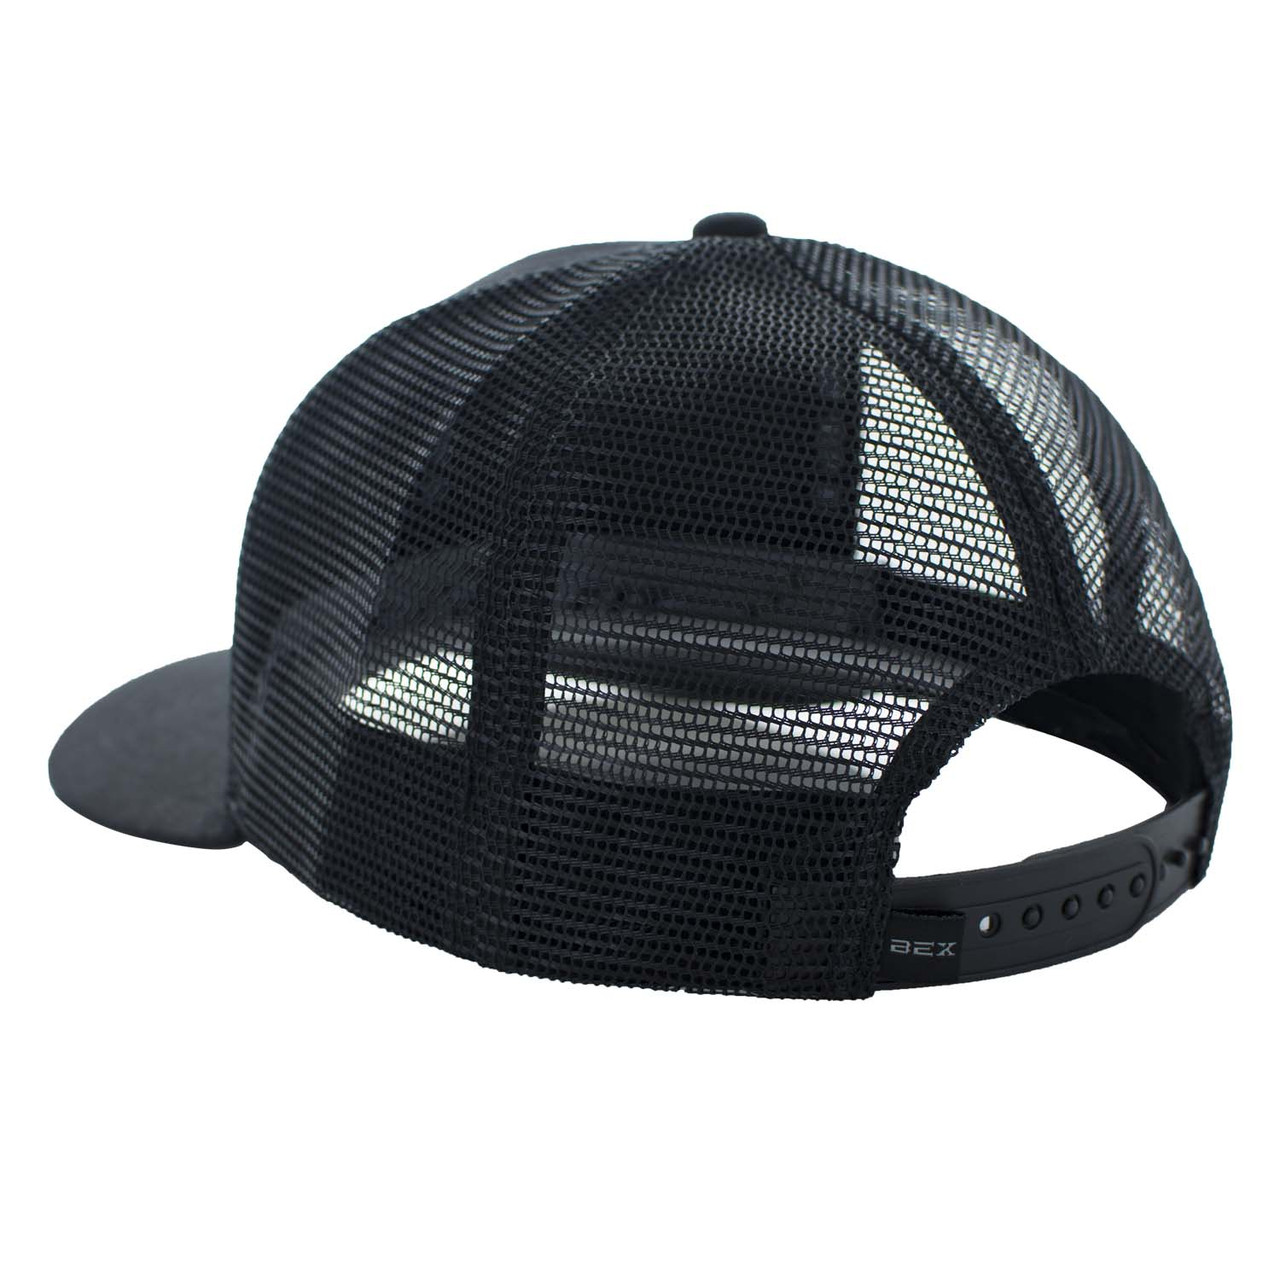 Bex Caps - OG - Black - Billy's Western Wear